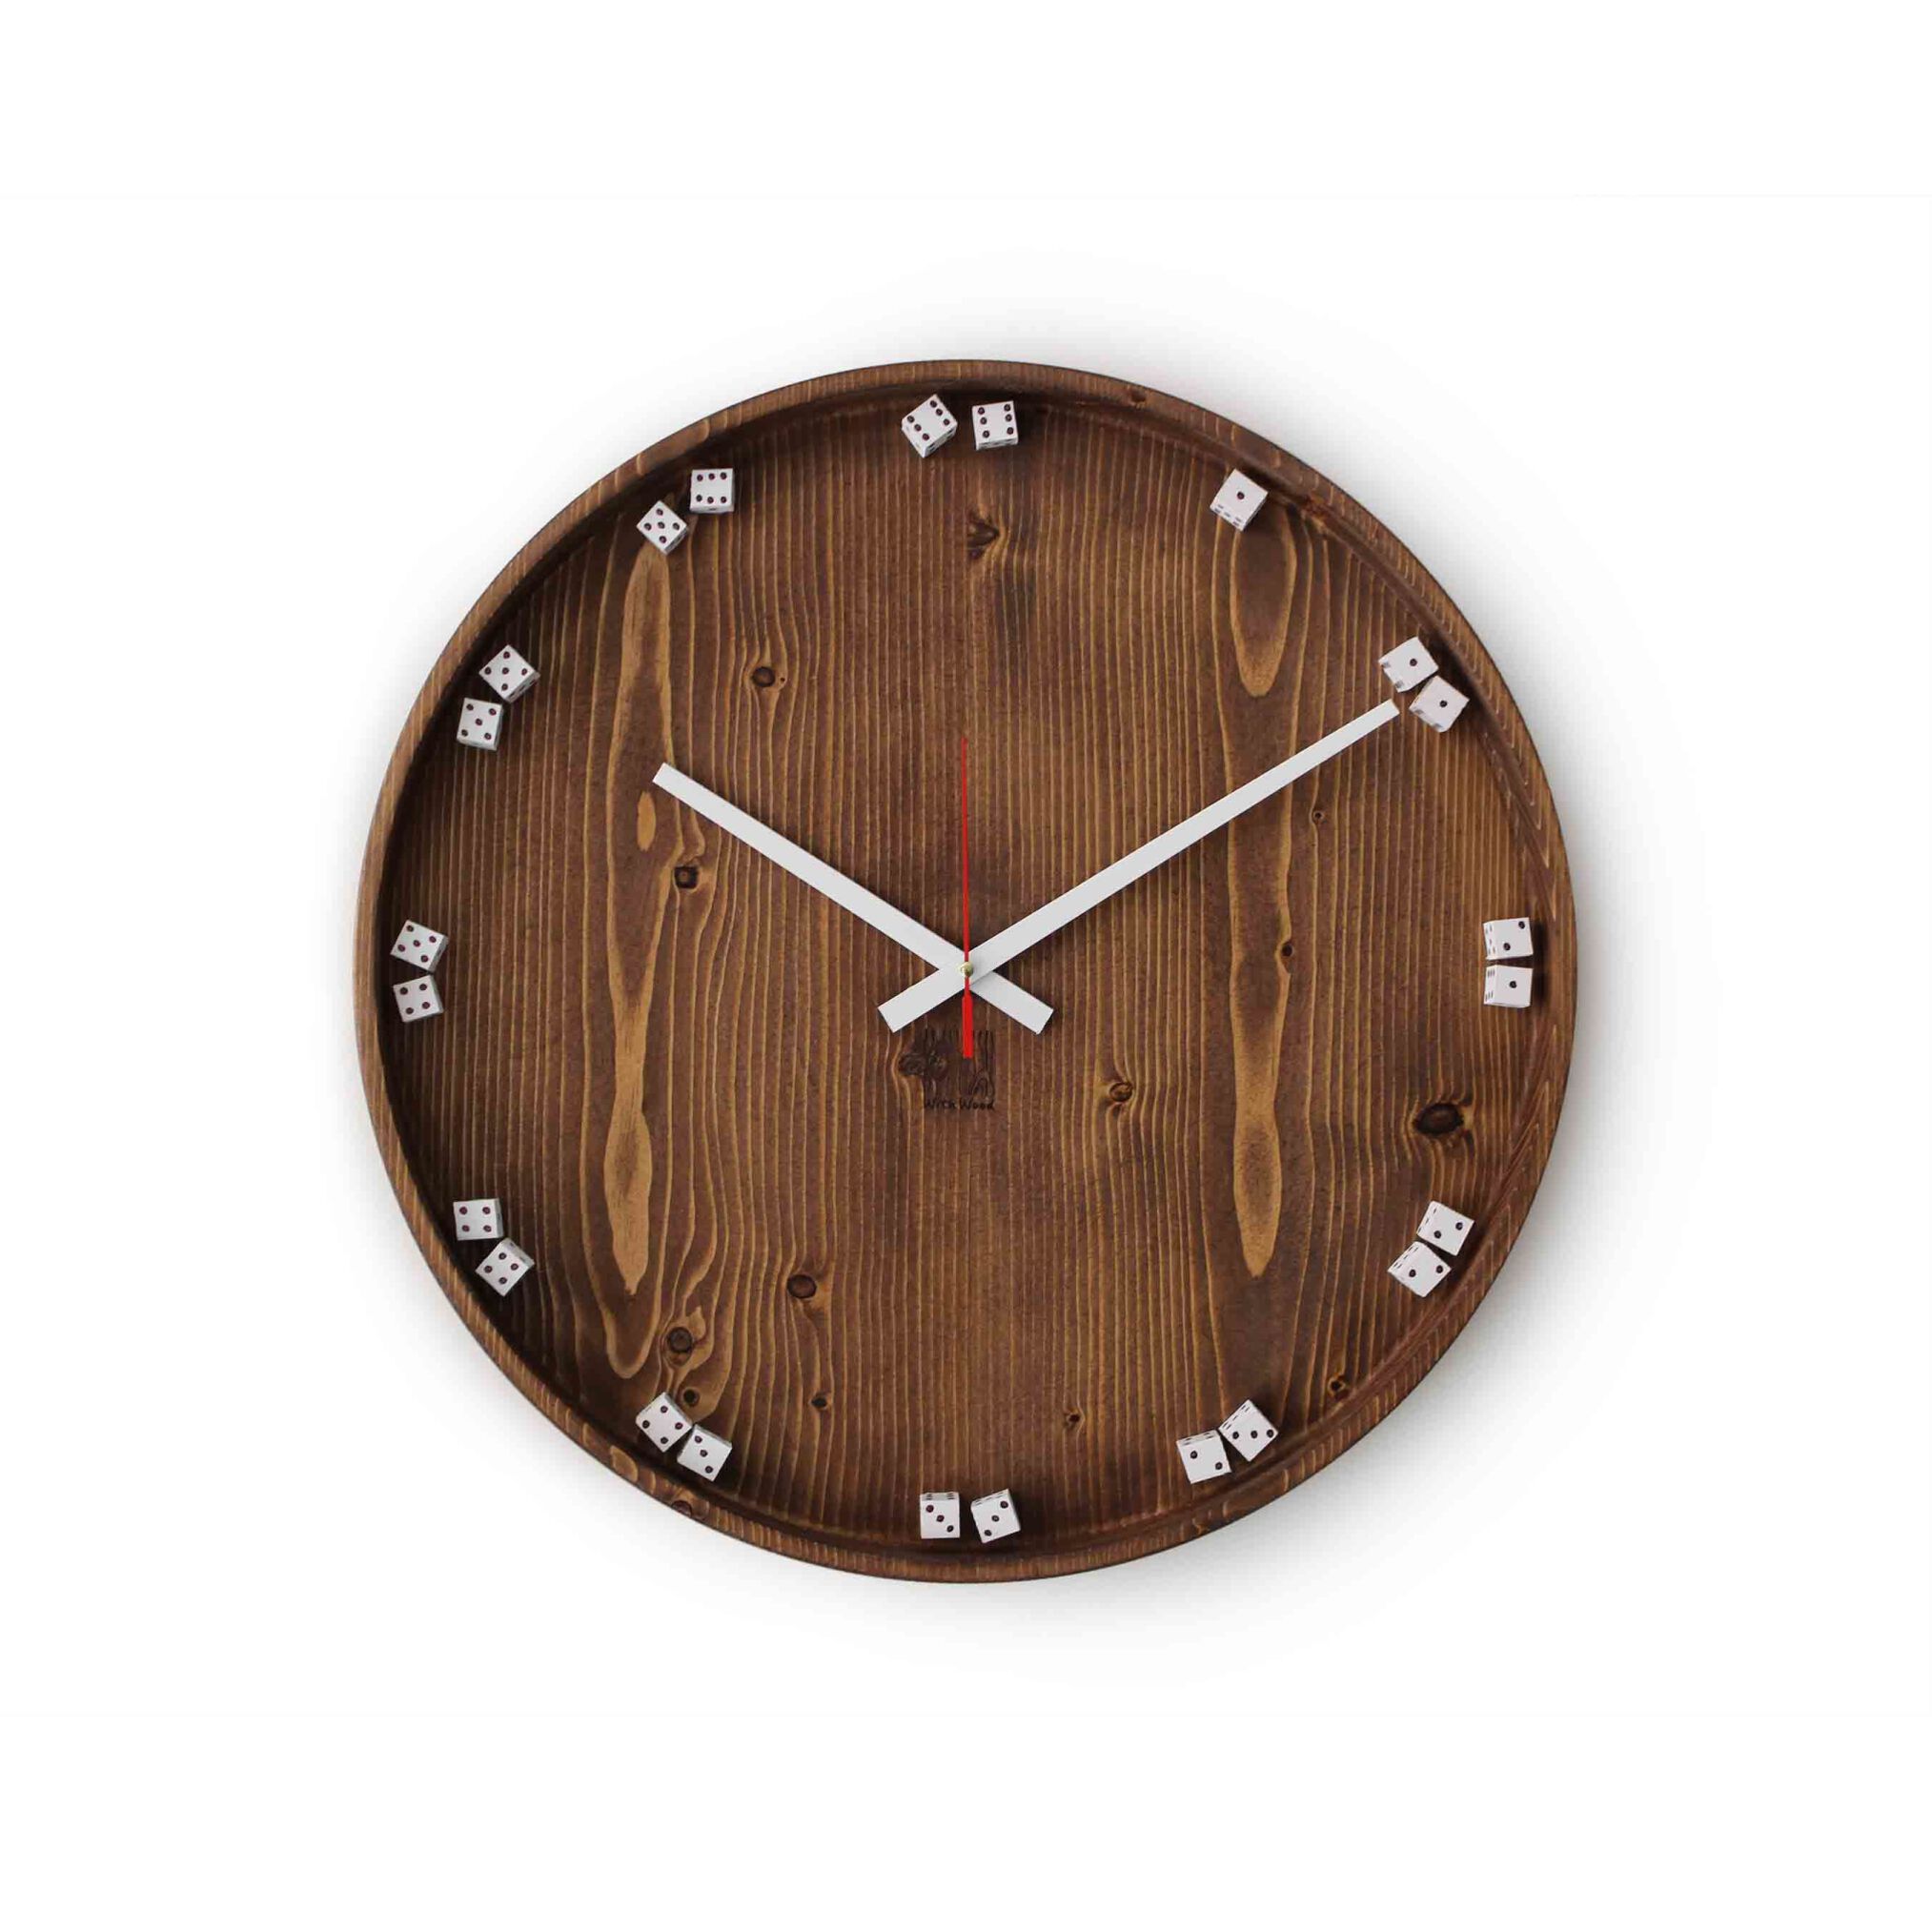  ساعت تمام چوب روس مدل تاس، ساعت چوبی ، ساعت کادویی 